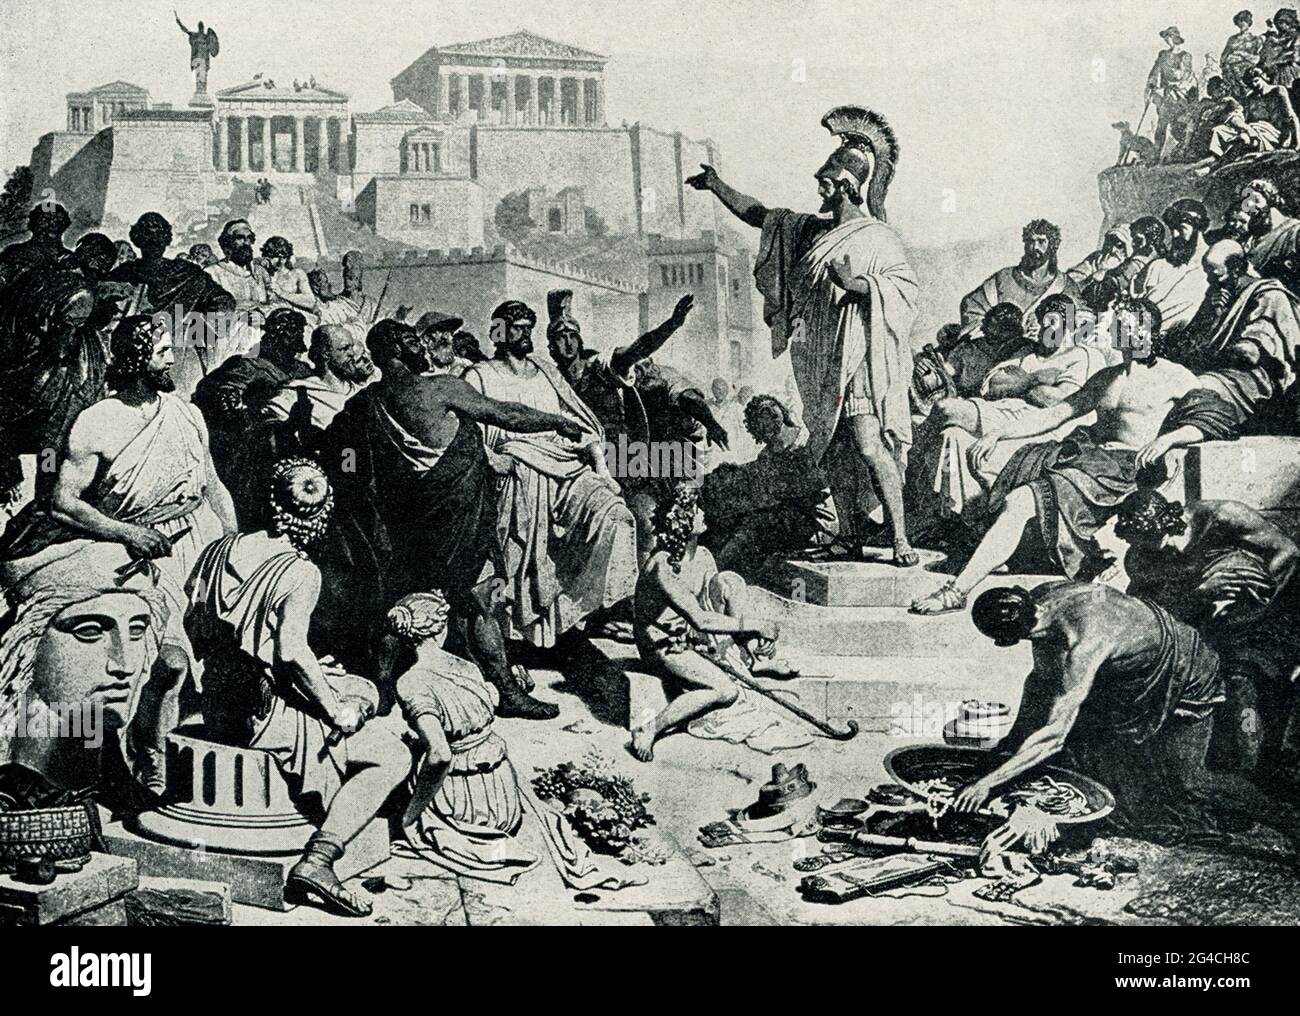 Questa illustrazione del 1899 mostra Pericle che si rivolsero agli ateniesi come raffigurato da Philipp Foltz (pittore di storia tedesco - morto nel 1877). 'L'Orazione funeraria di Pericle' è un famoso discorso tratto dalla storia di Thucidide della guerra Peloponnesiana. Il discorso è stato pronunciato da Pericle, un eminente politico ateniano, alla fine del primo anno della guerra Peloponnesiana come parte dei funerali pubblici annuali per i morti di guerra. L'anno è stato il 431 a.C. Foto Stock